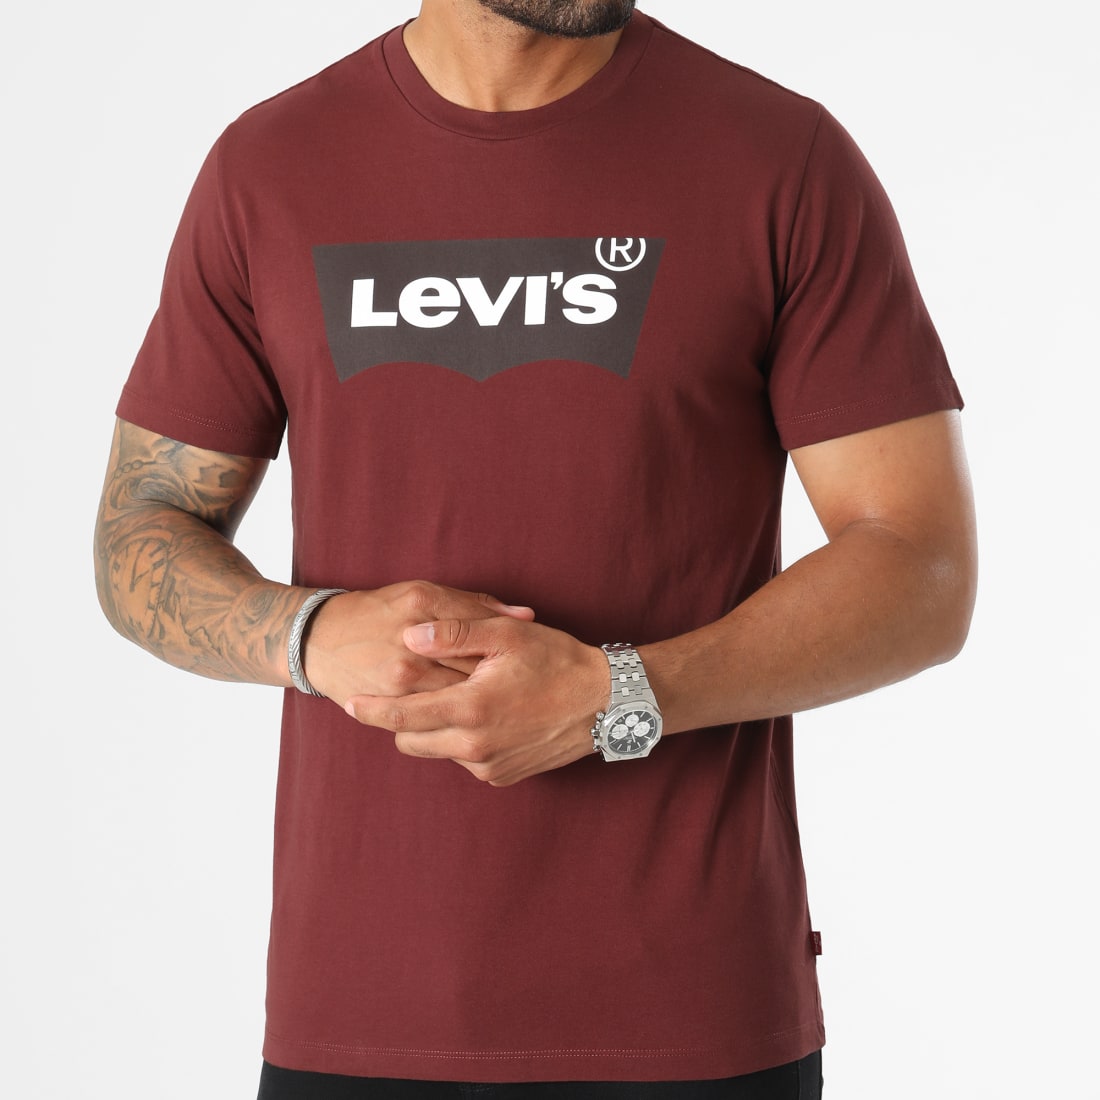 Levi's - T-shirt avec étiquette logo encadrée - Bordeaux